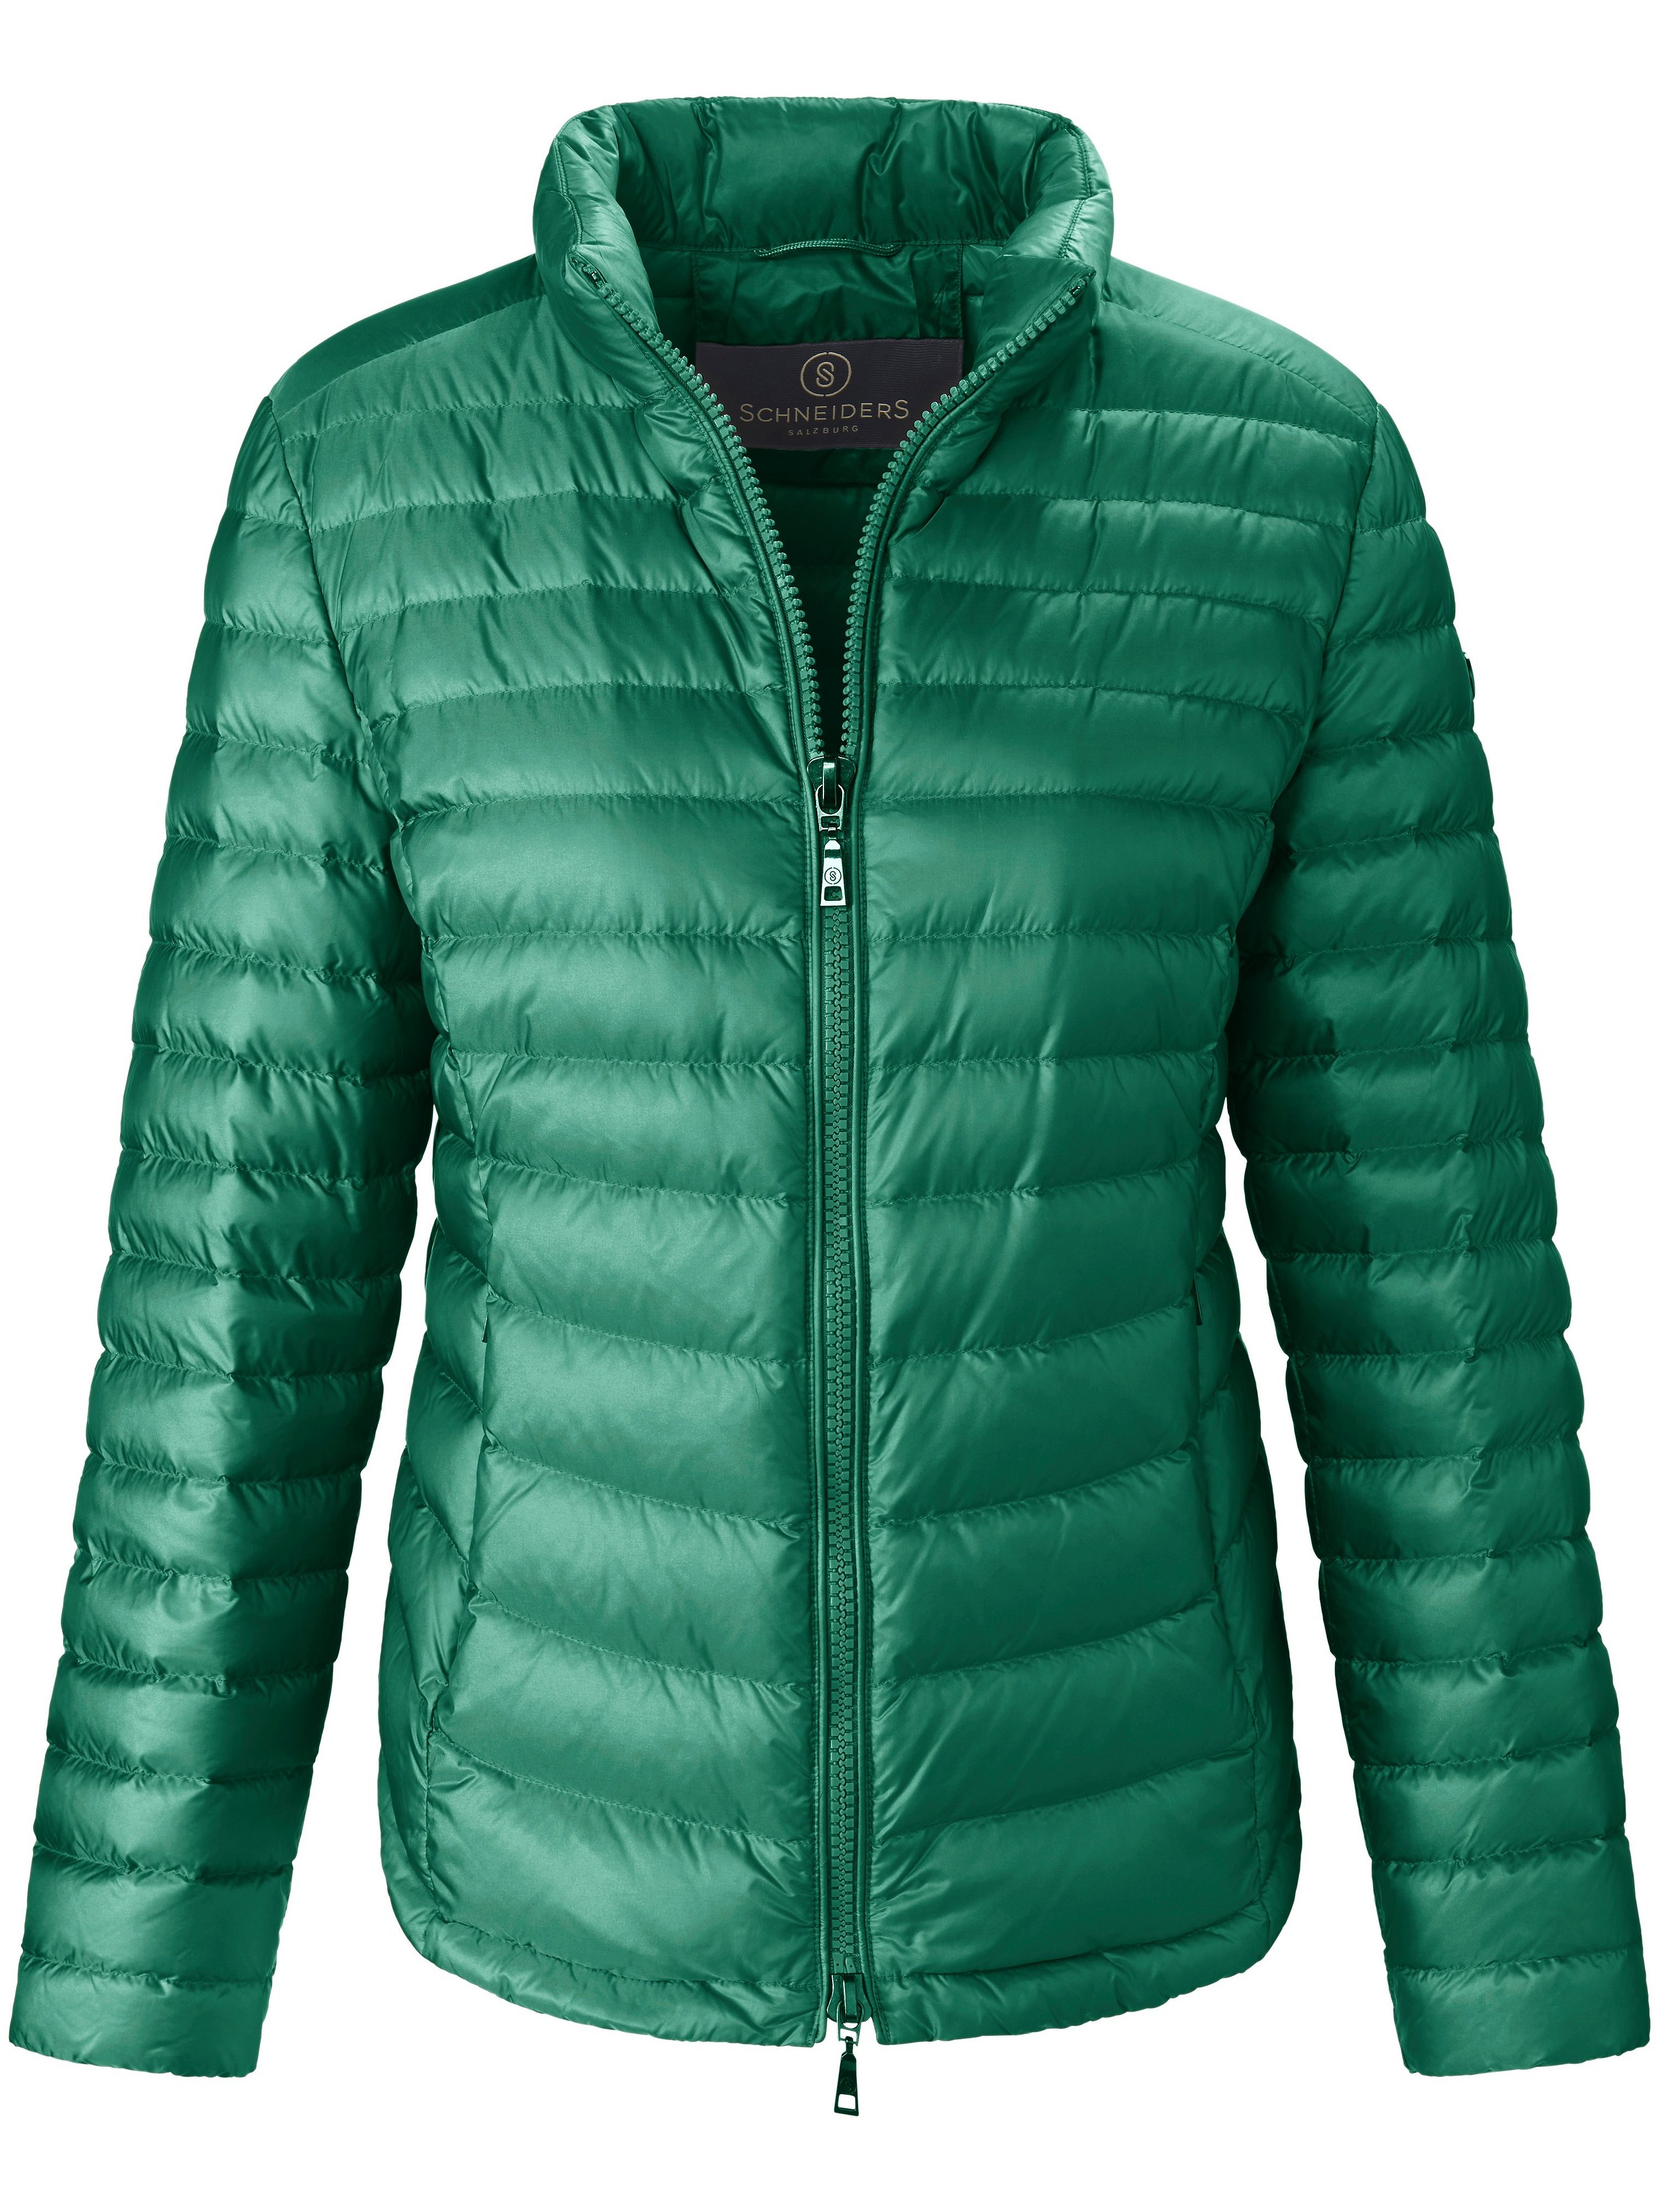 La veste matelassée microfibre déperlante  Schneiders Salzburg vert taille 48